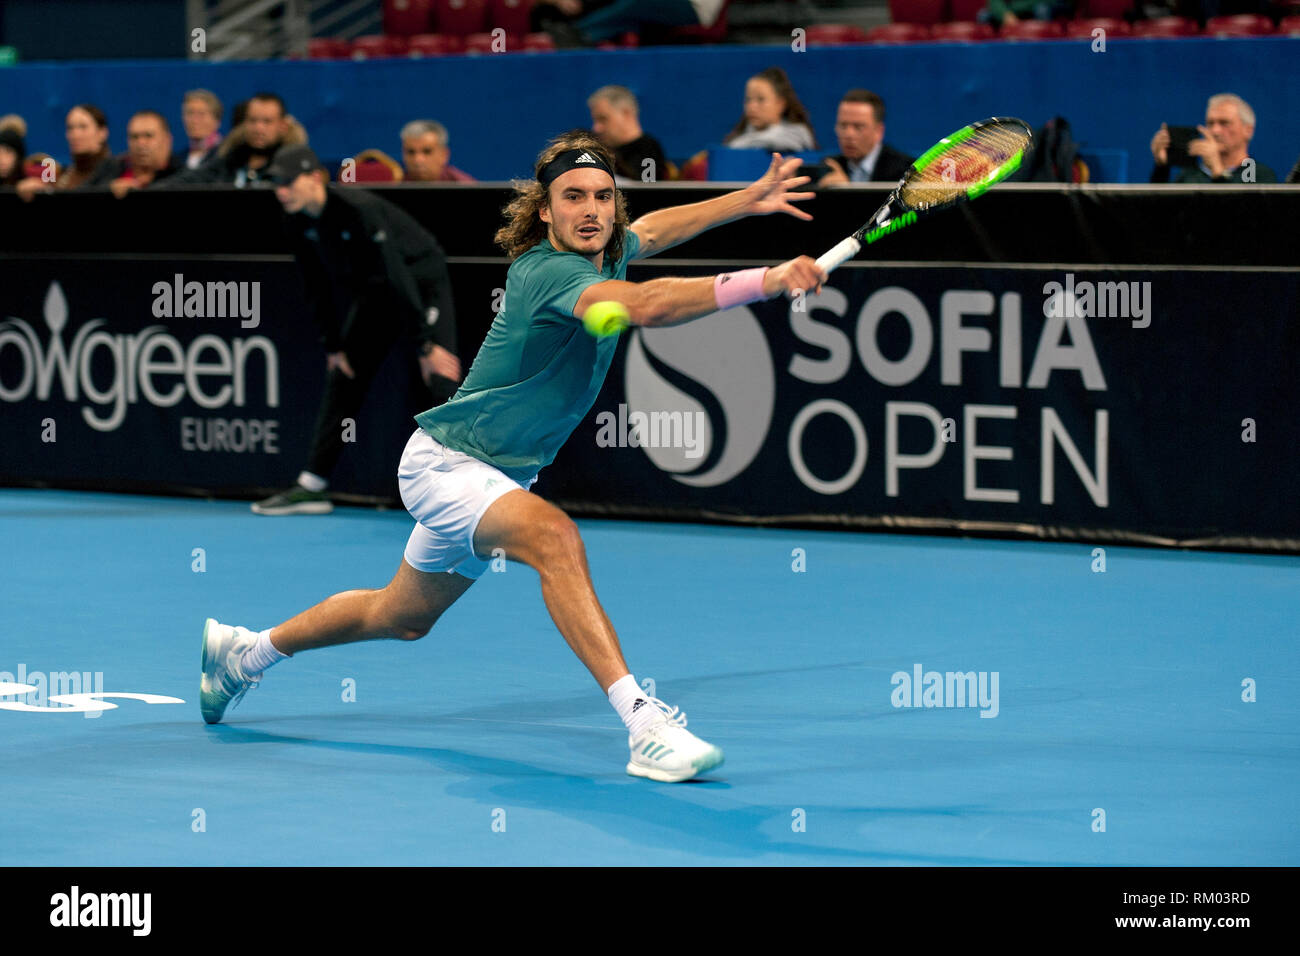 SOFIA - FÉVRIER 07,2019 : Stefanos Tsitsipas(GRE) joue à l'ATP tournoi Open de Sofia à Sofia, Bulgarie le 05 février 2019 - Image Banque D'Images